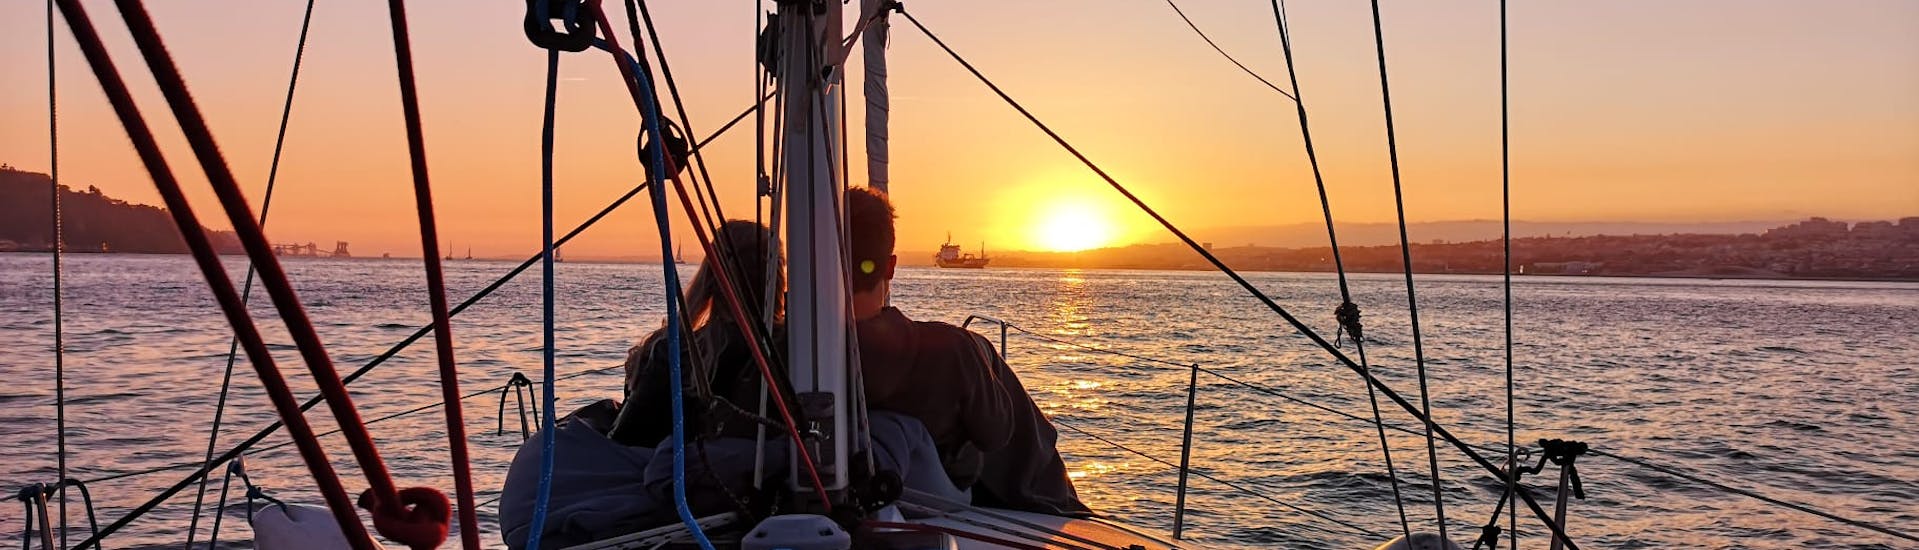 Privé zeilboottocht van Cascais met zonsondergang.